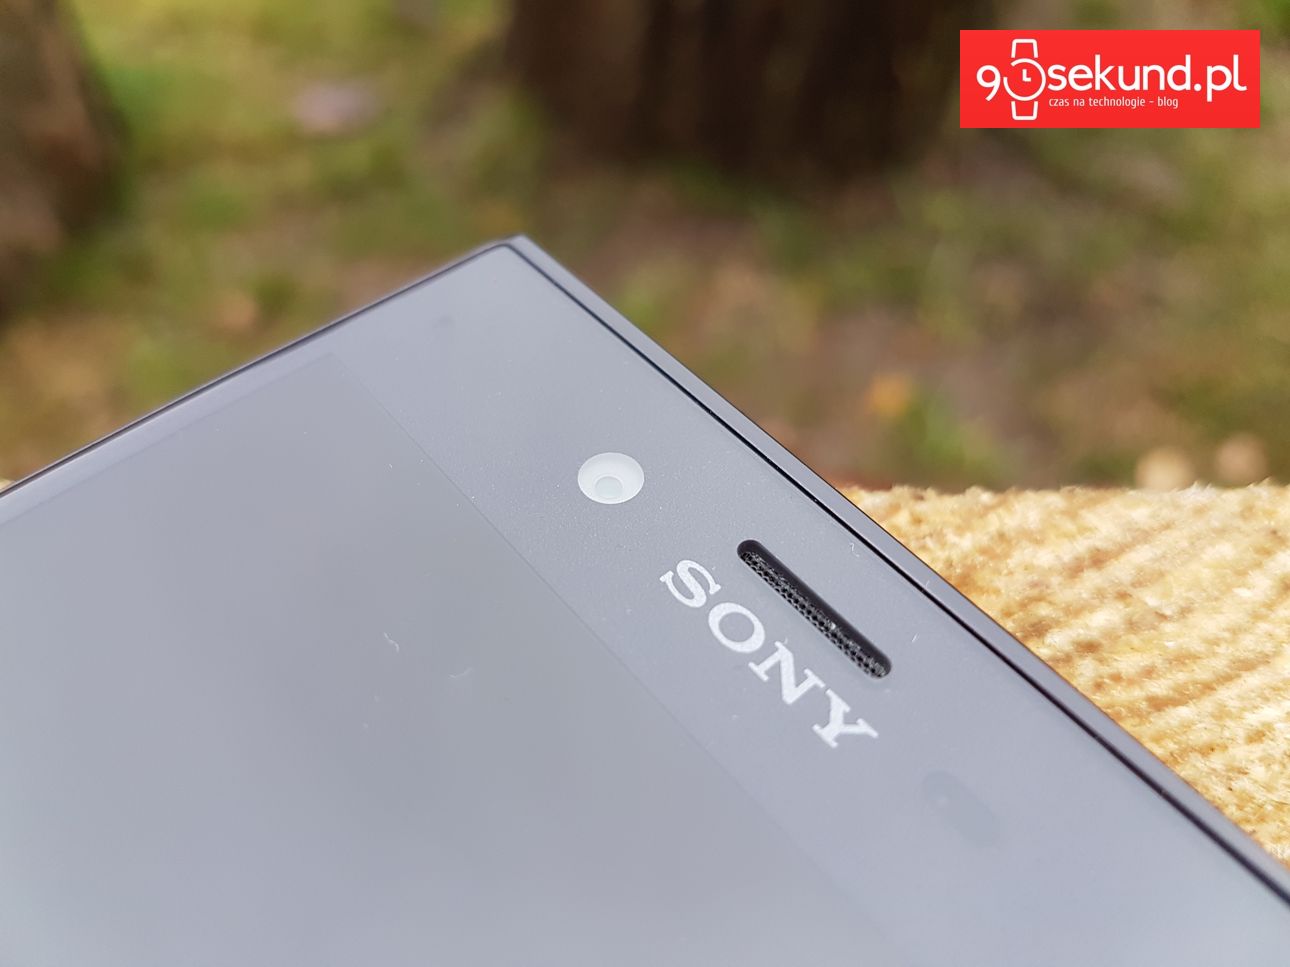 Sony Xperia XZ (F8331) - recenzja 90sekund.pl